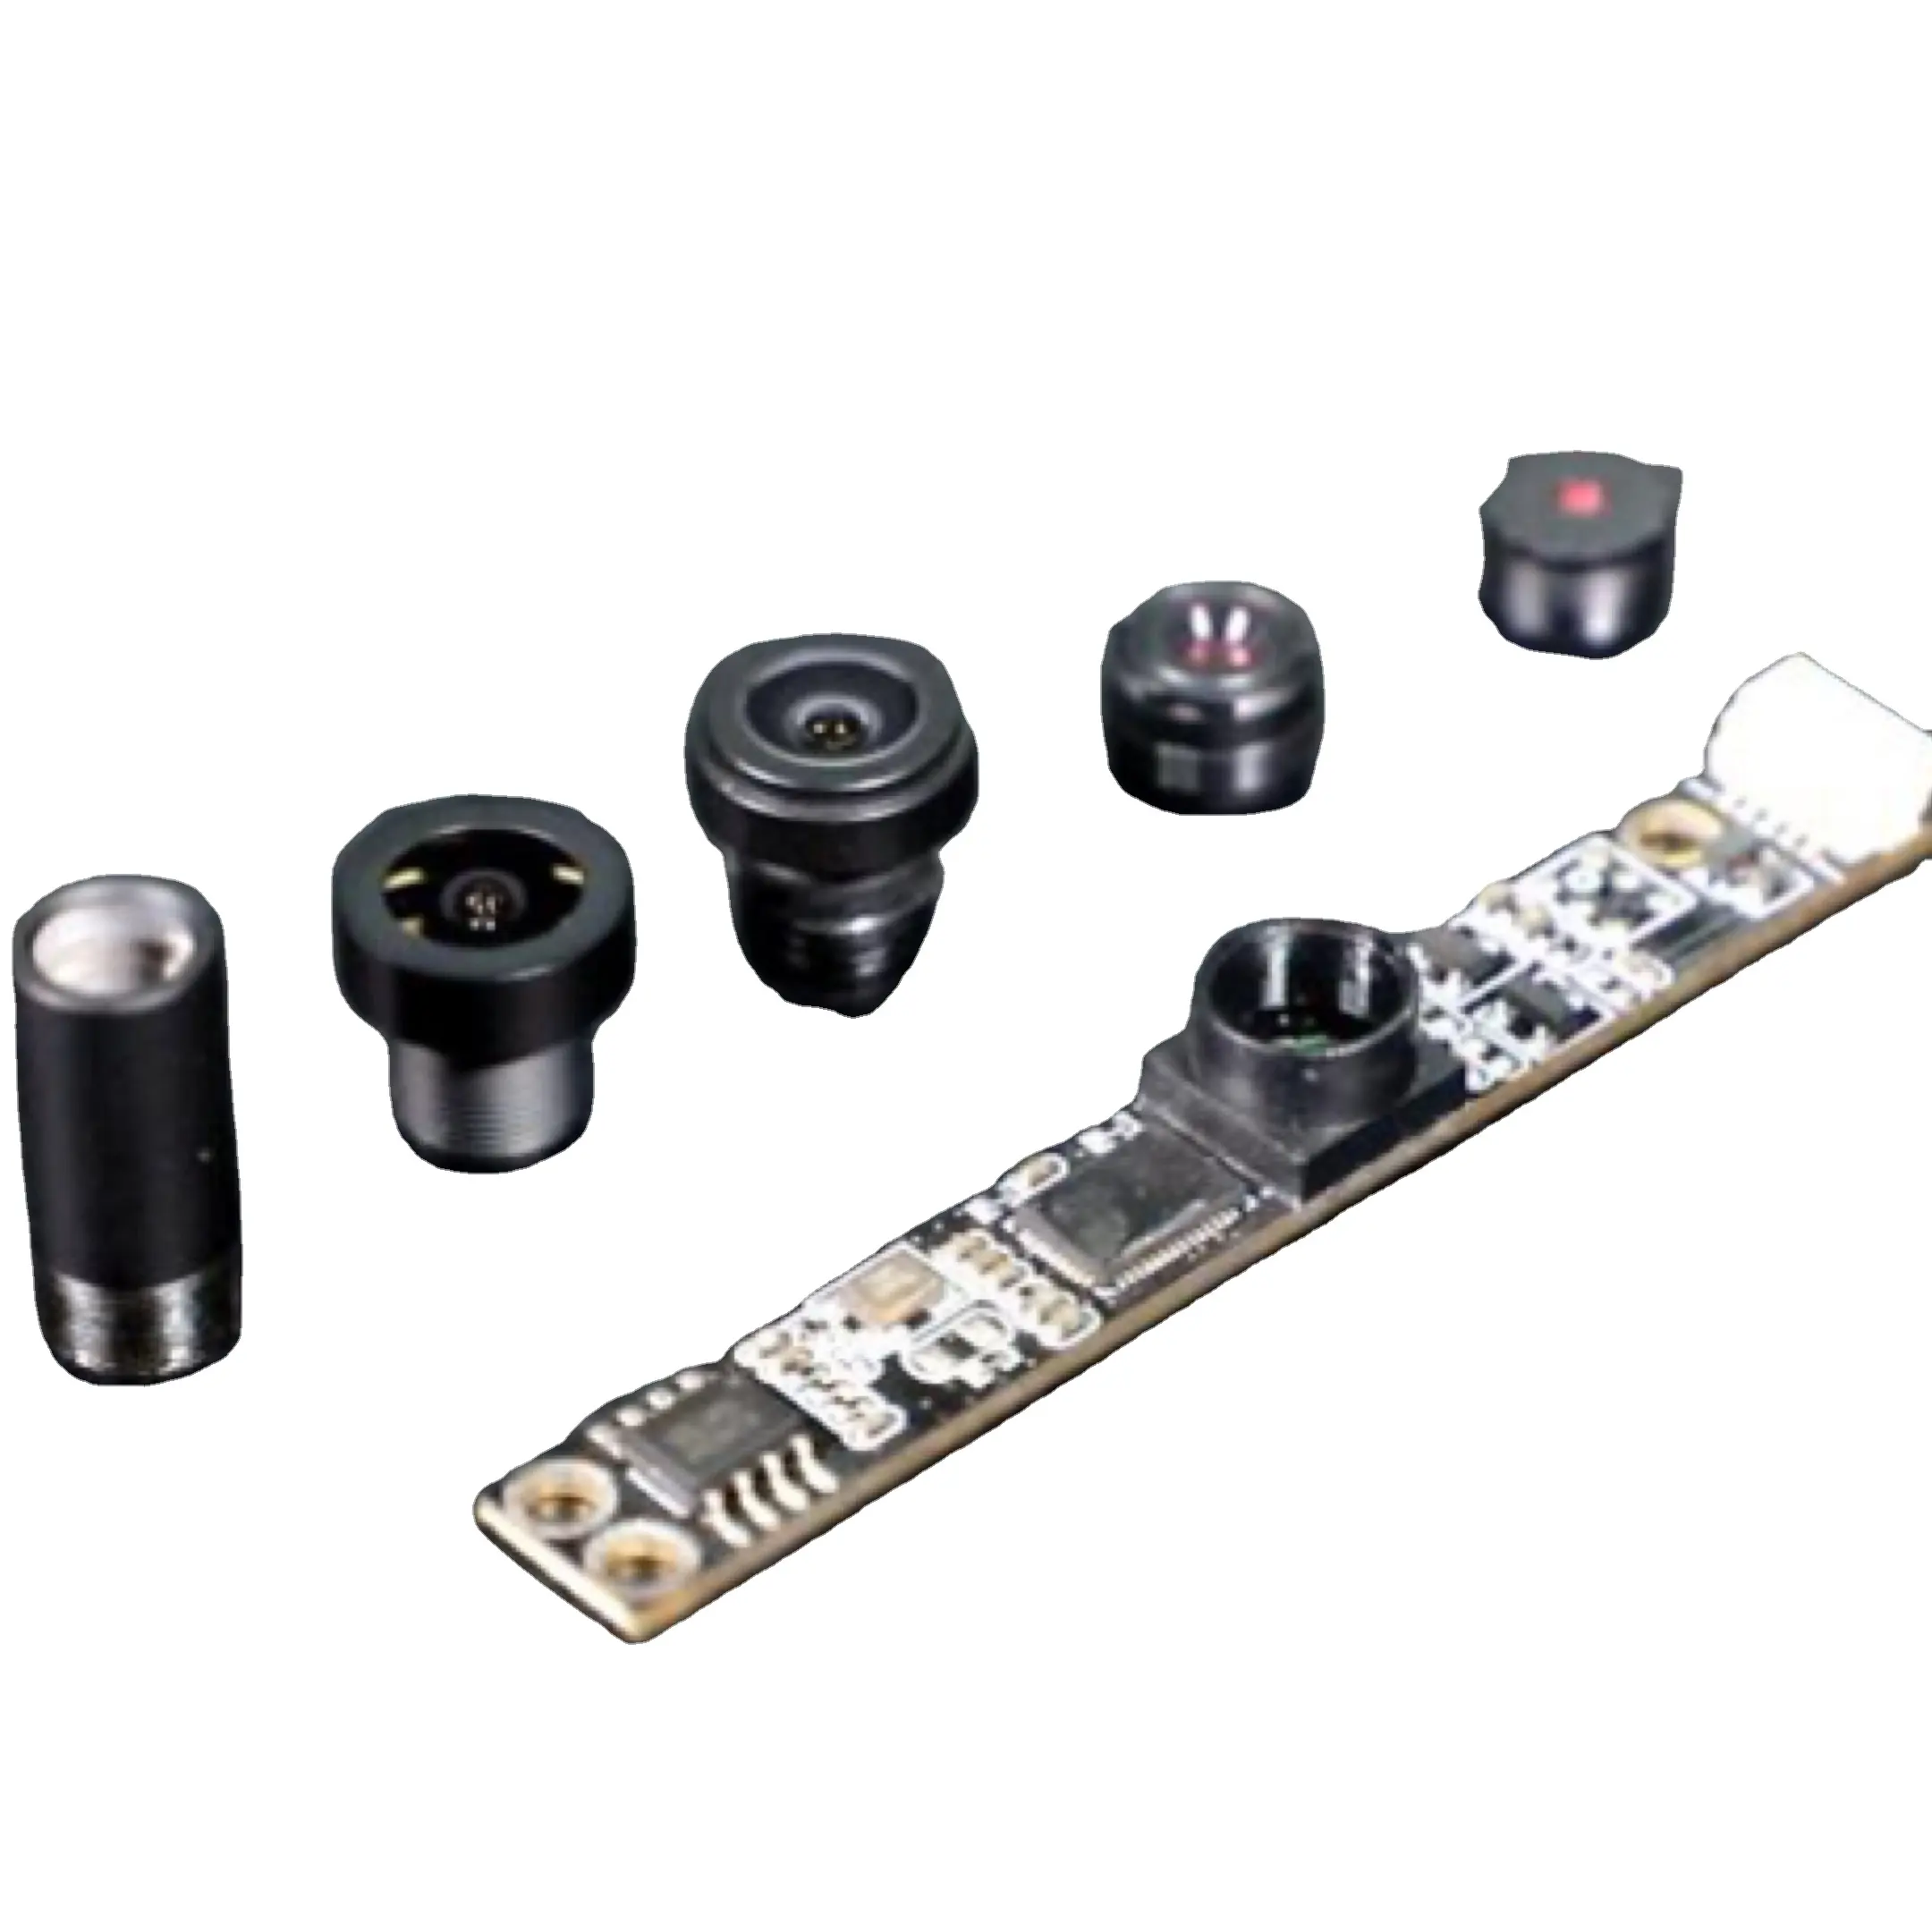 Supporta la personalizzazione USB NT99141 IMX385 IMX226 IMX482 OV5647 IMX316 OV5675 IMX316 modulo fotocamera